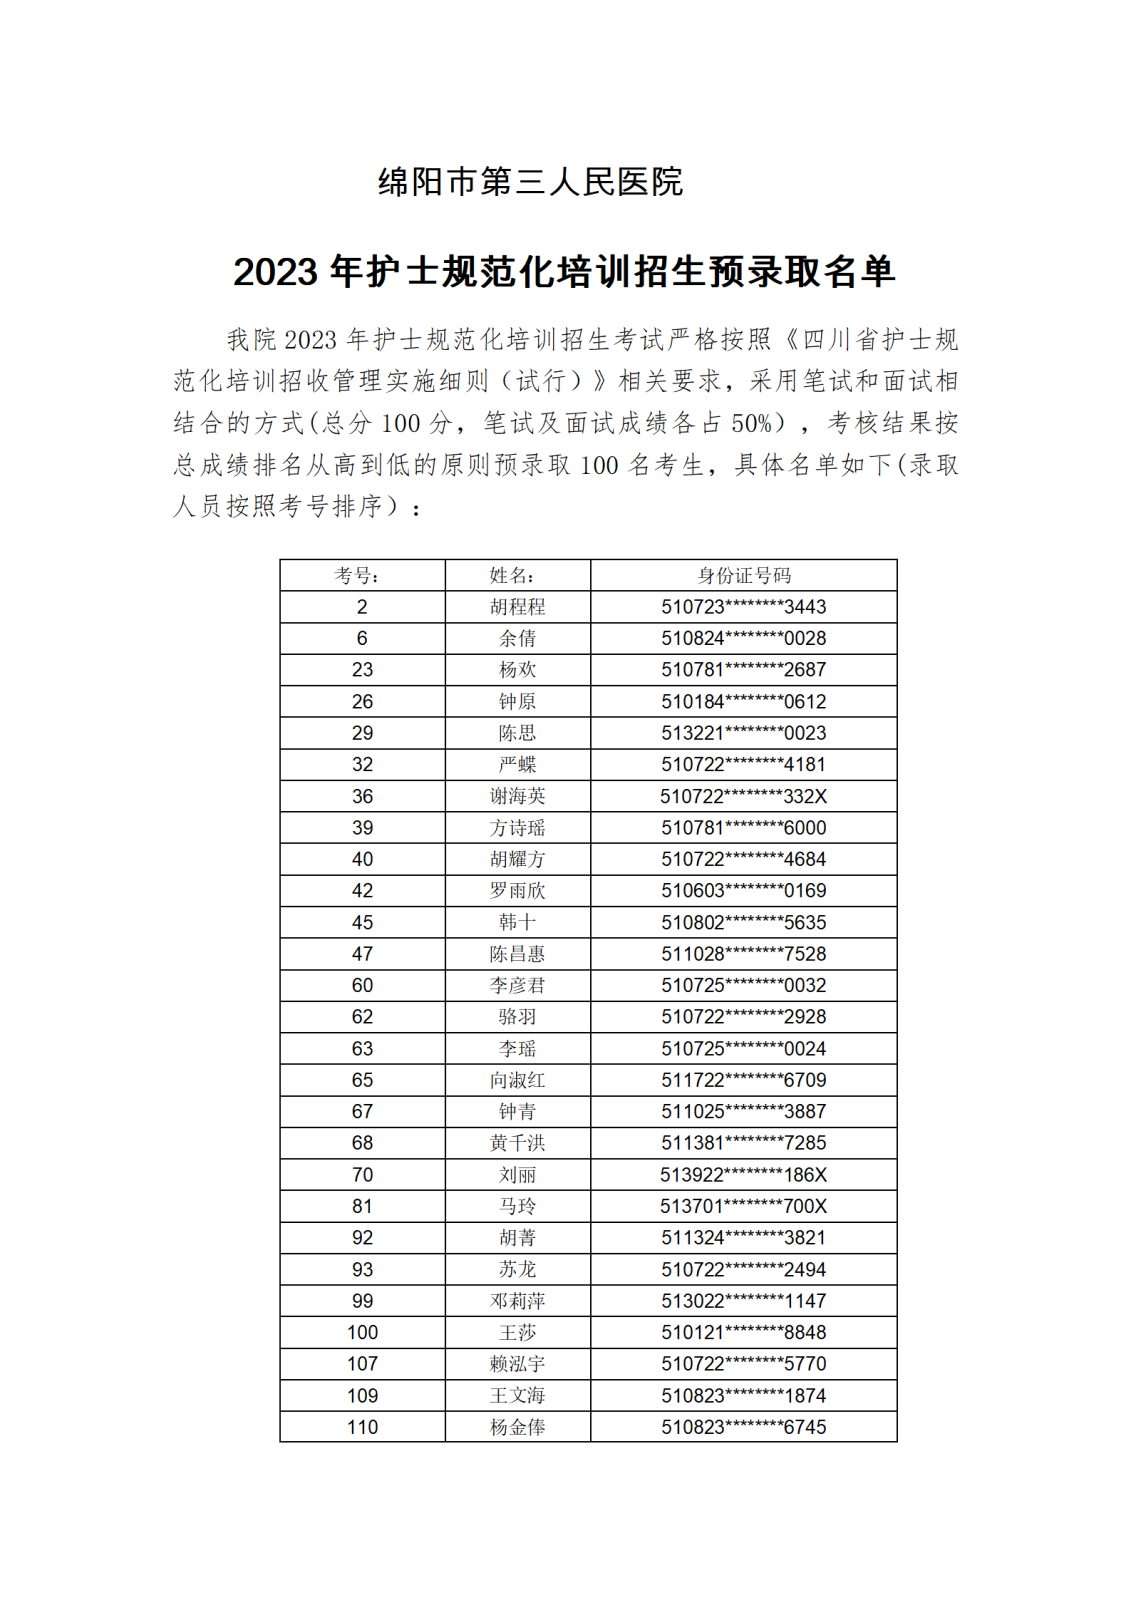 2023年护士规范化培训招生预录取名单_01(1).png